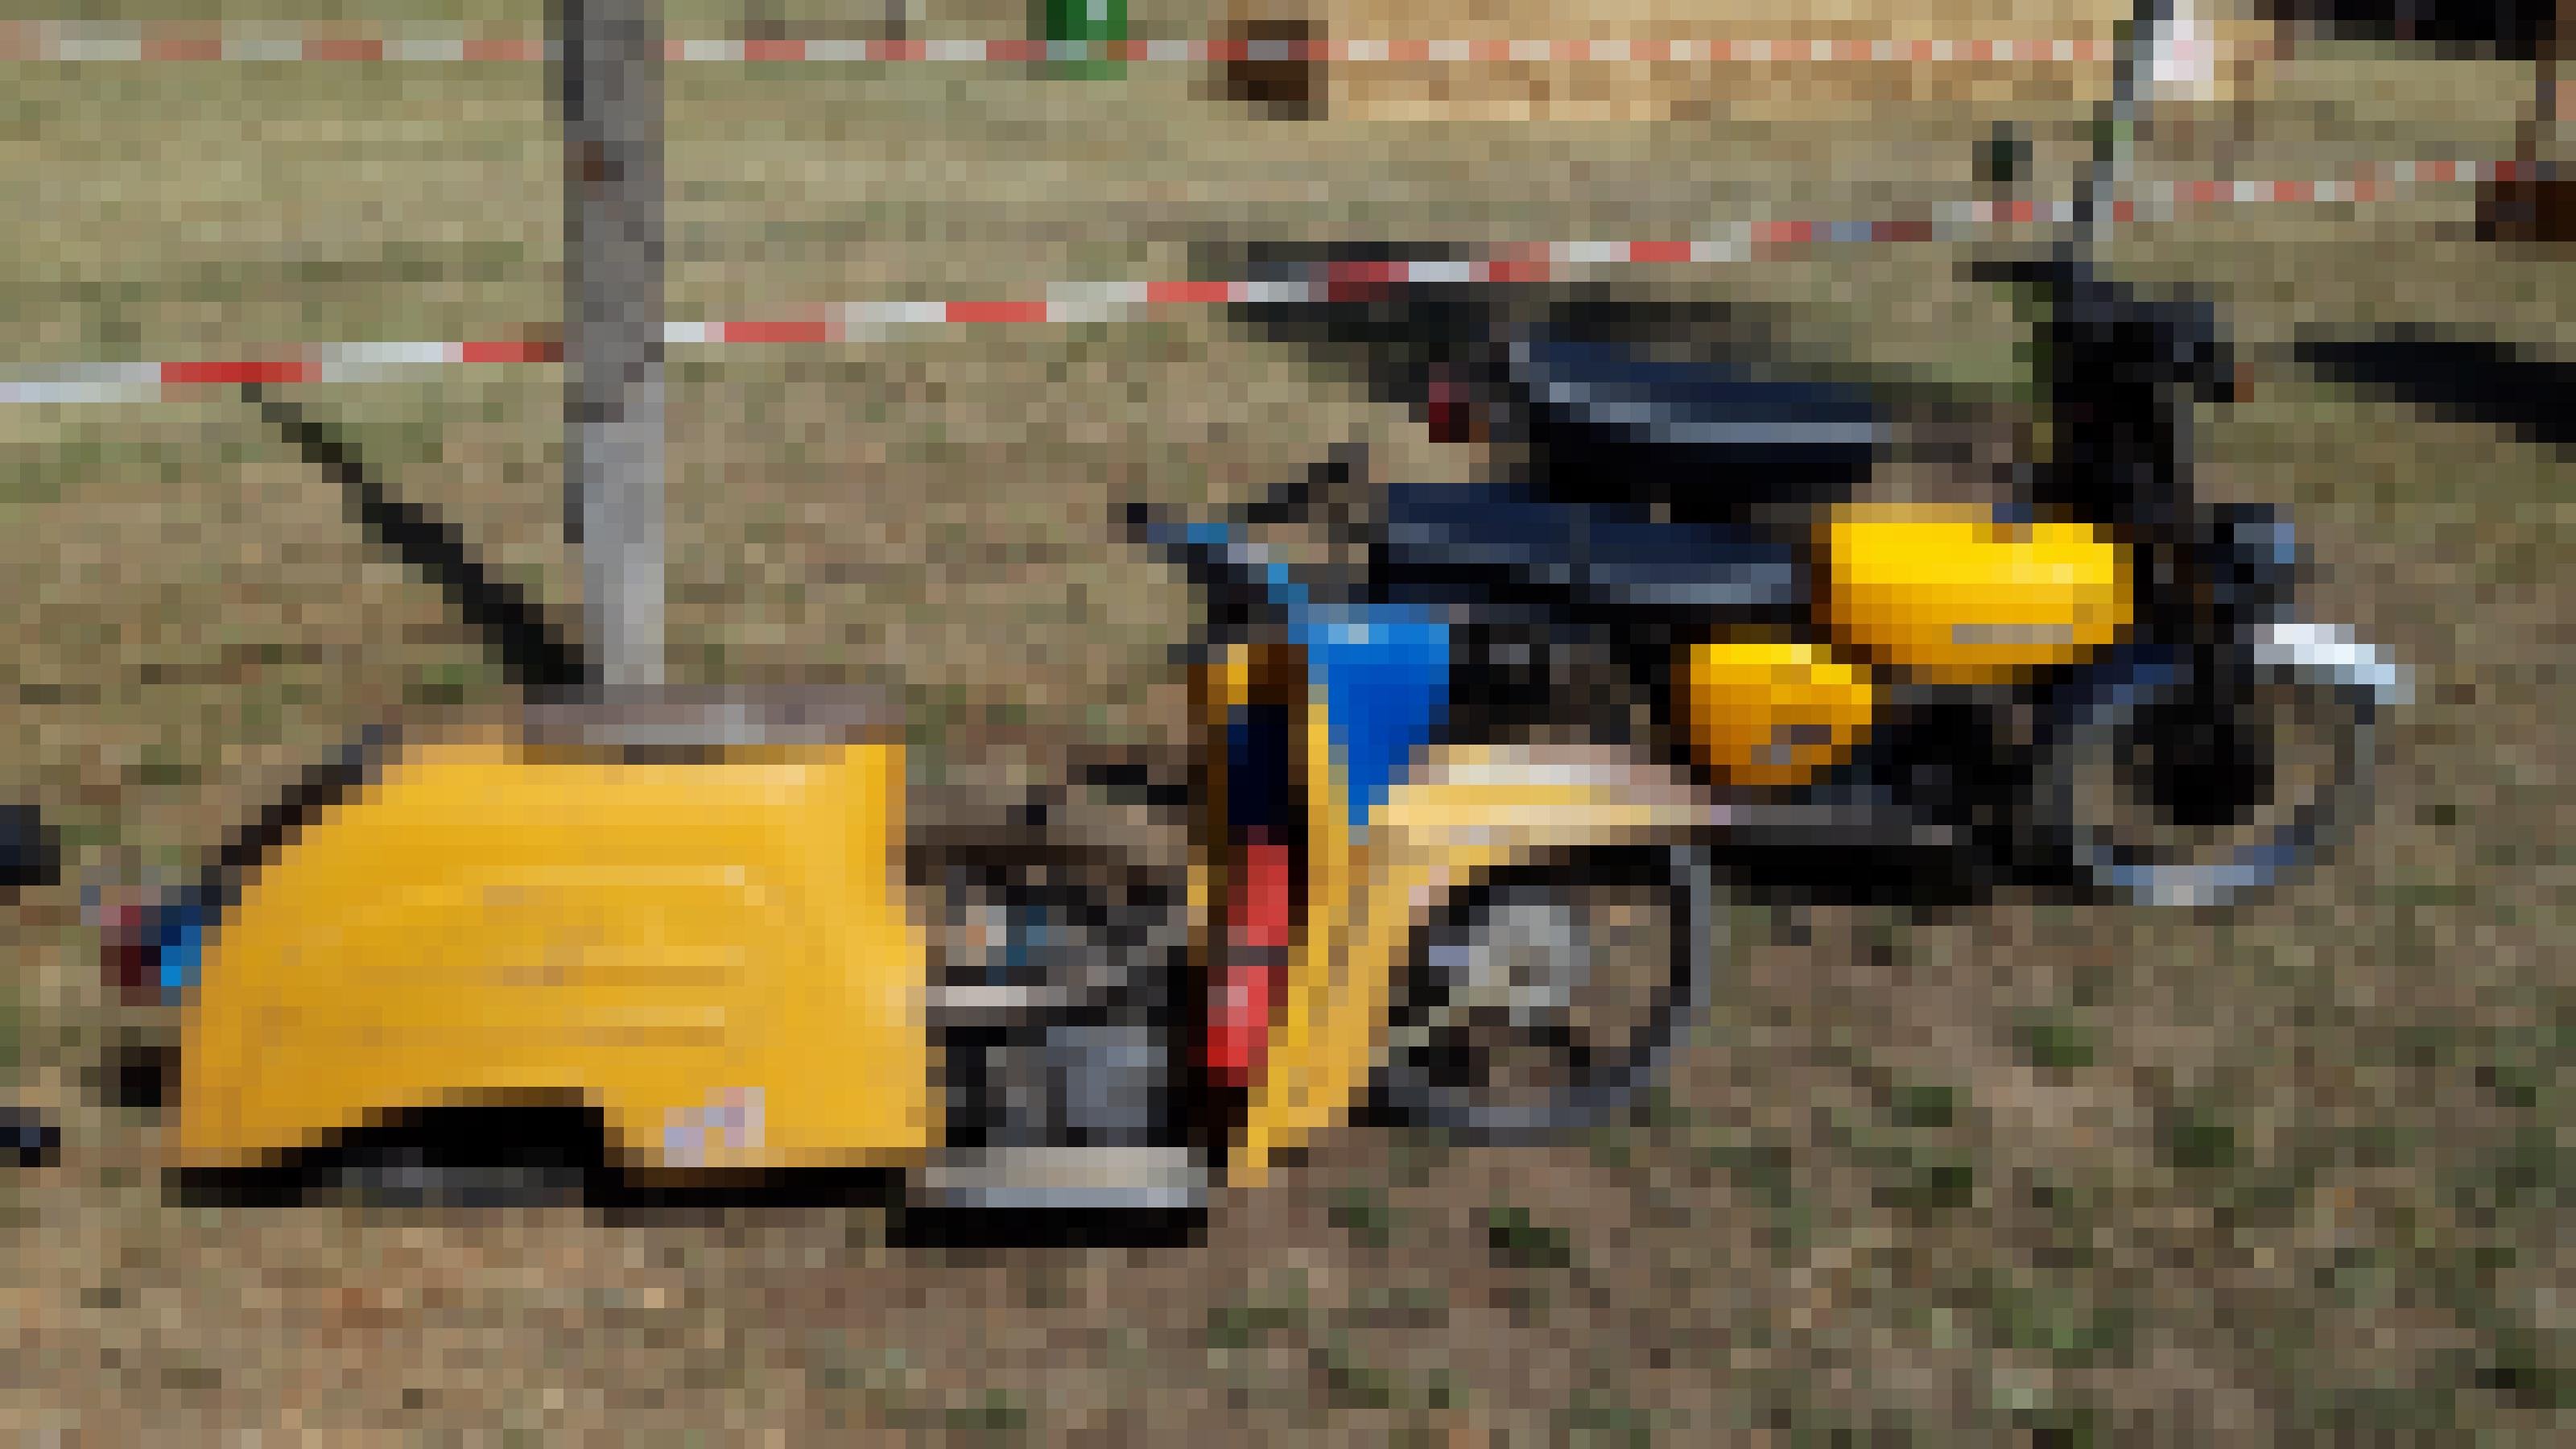 Einem gelben Moped fehlt das Hinterrad